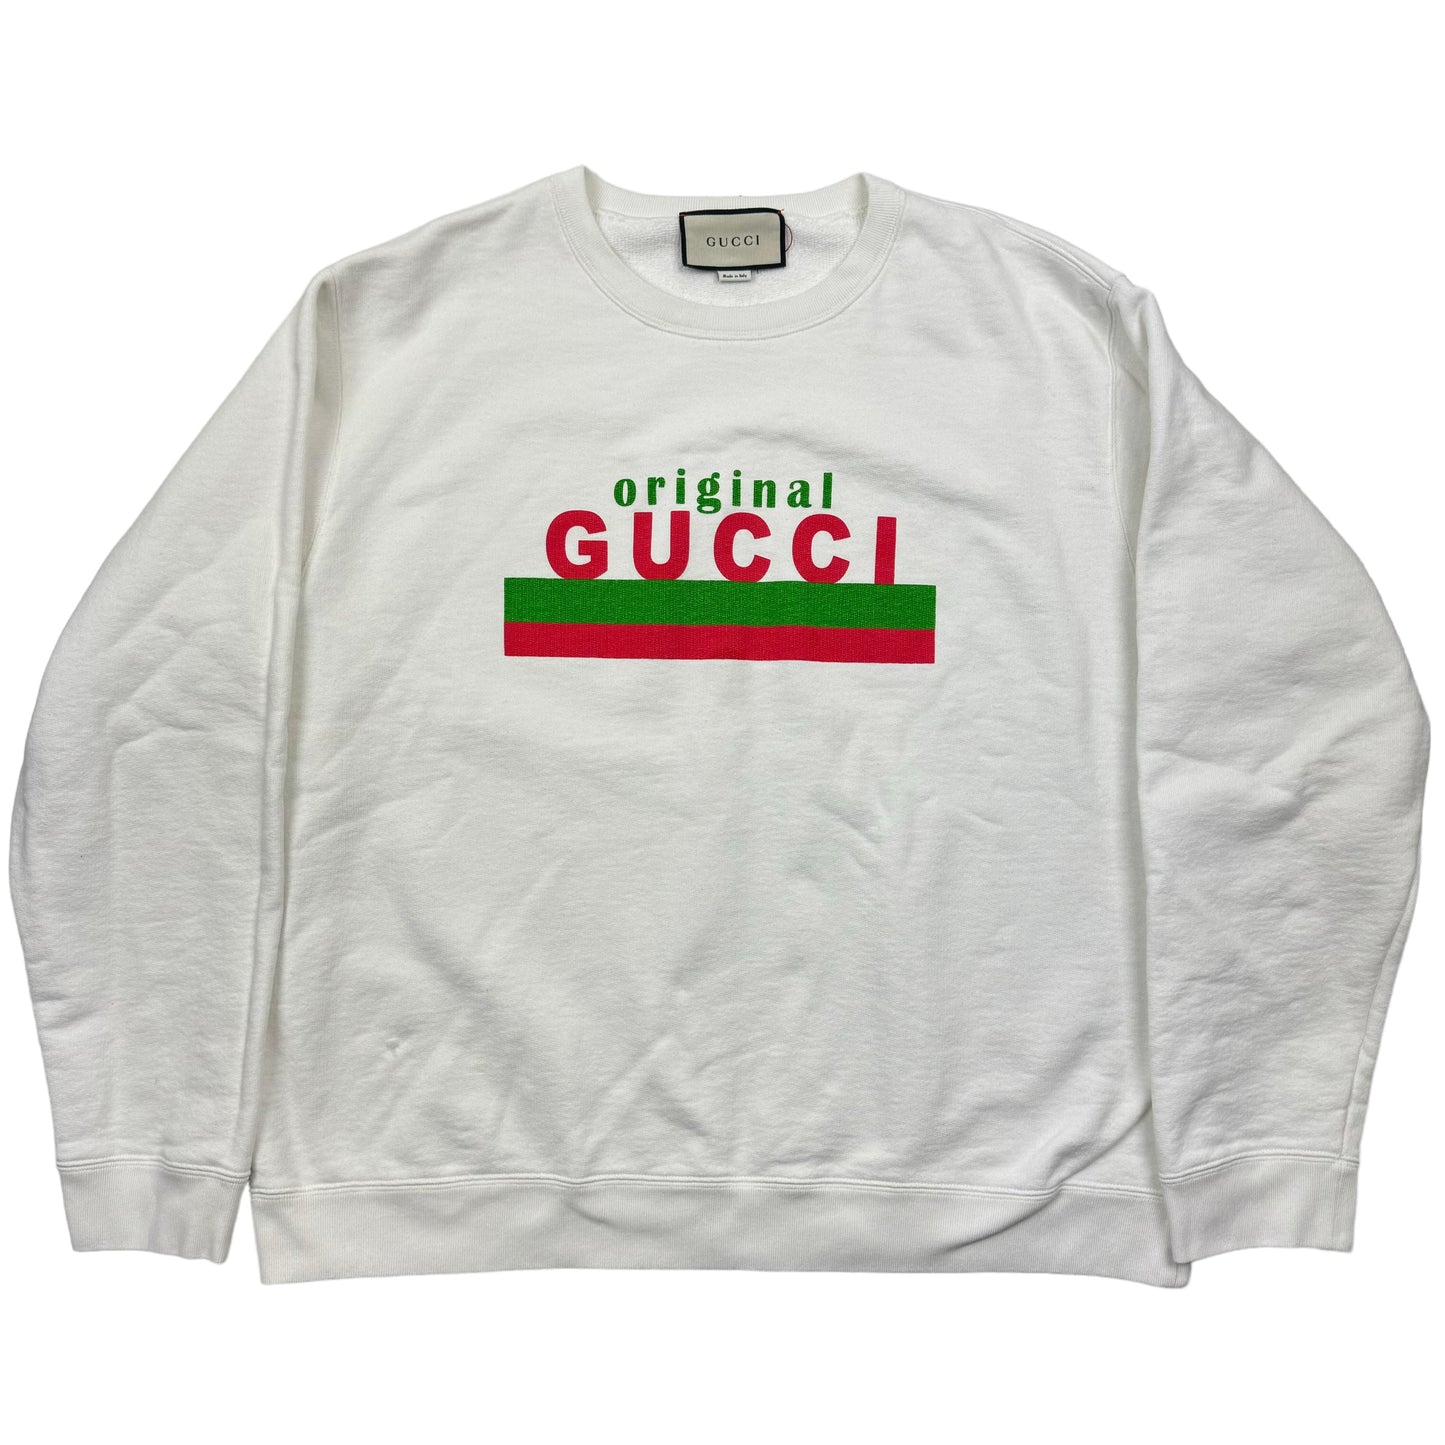 Gucci Original Crewneck